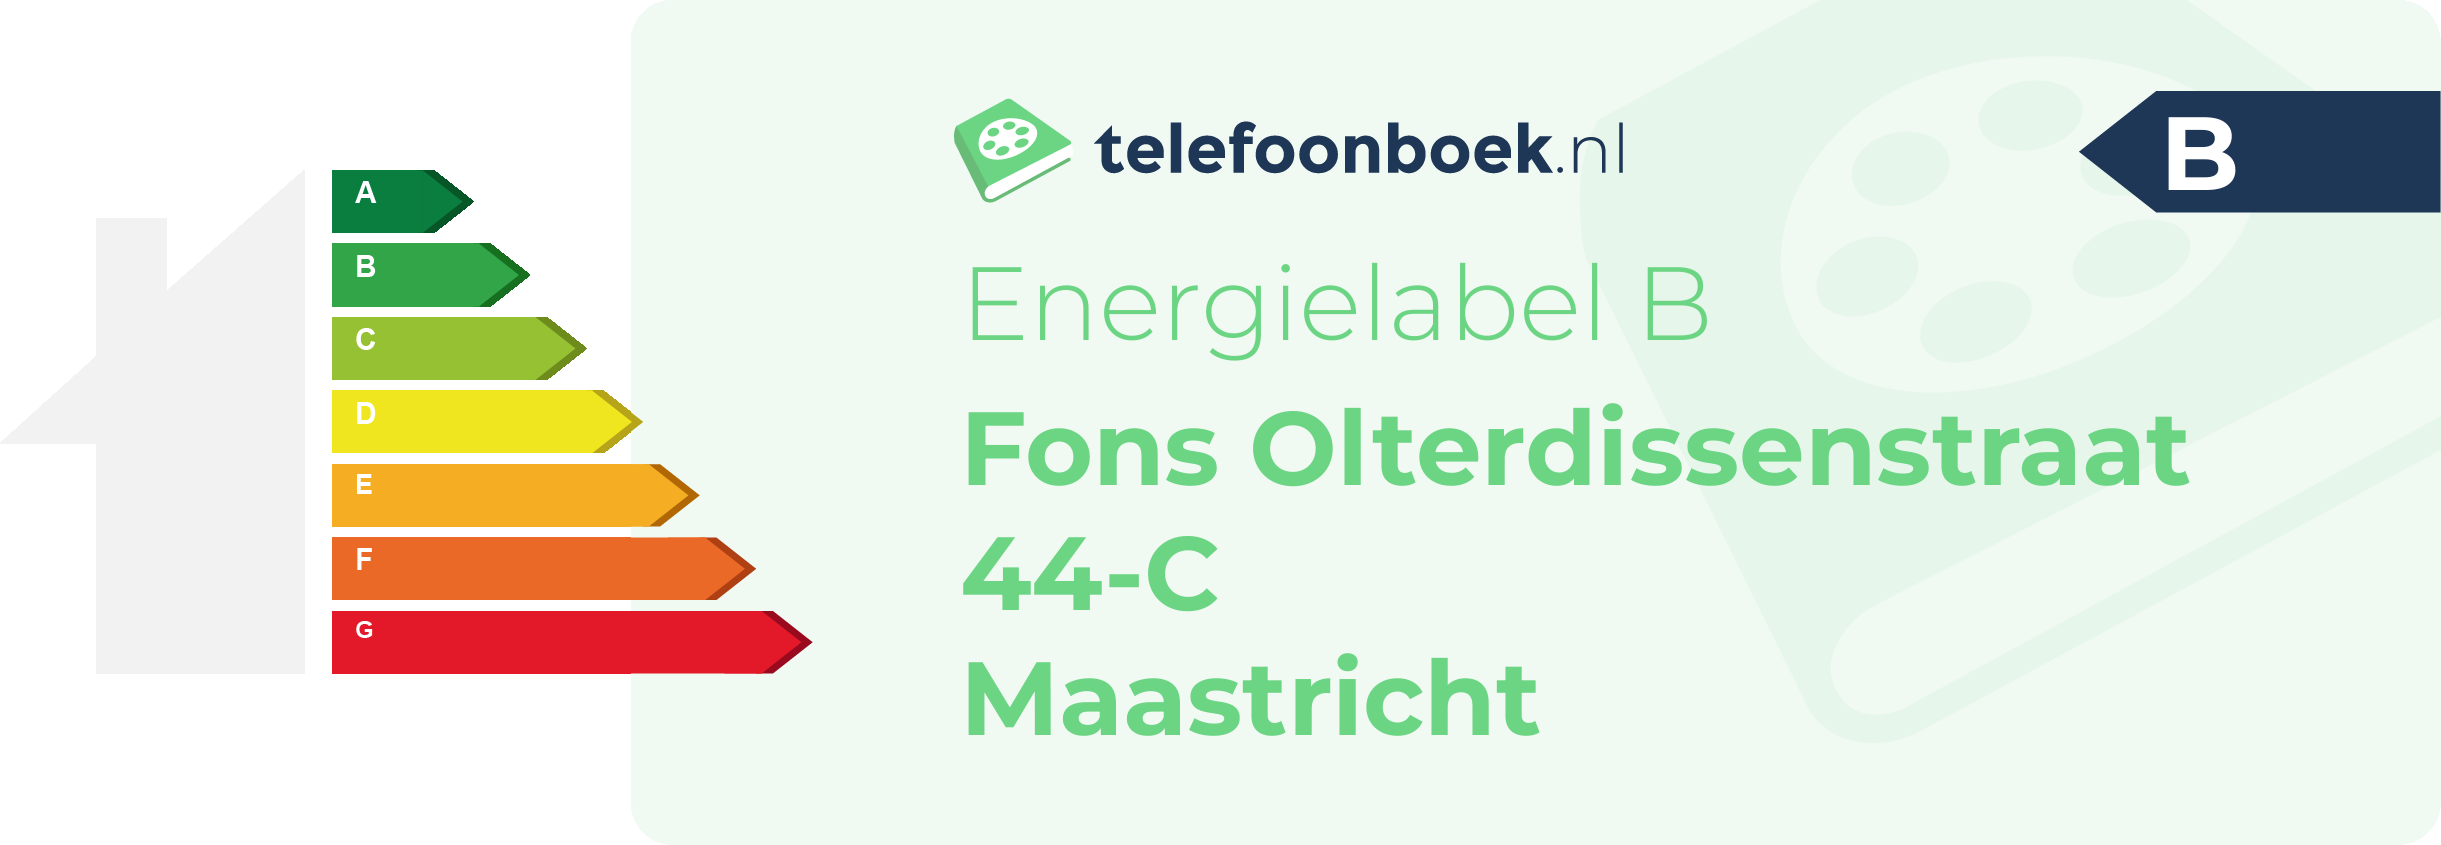 Energielabel Fons Olterdissenstraat 44-C Maastricht